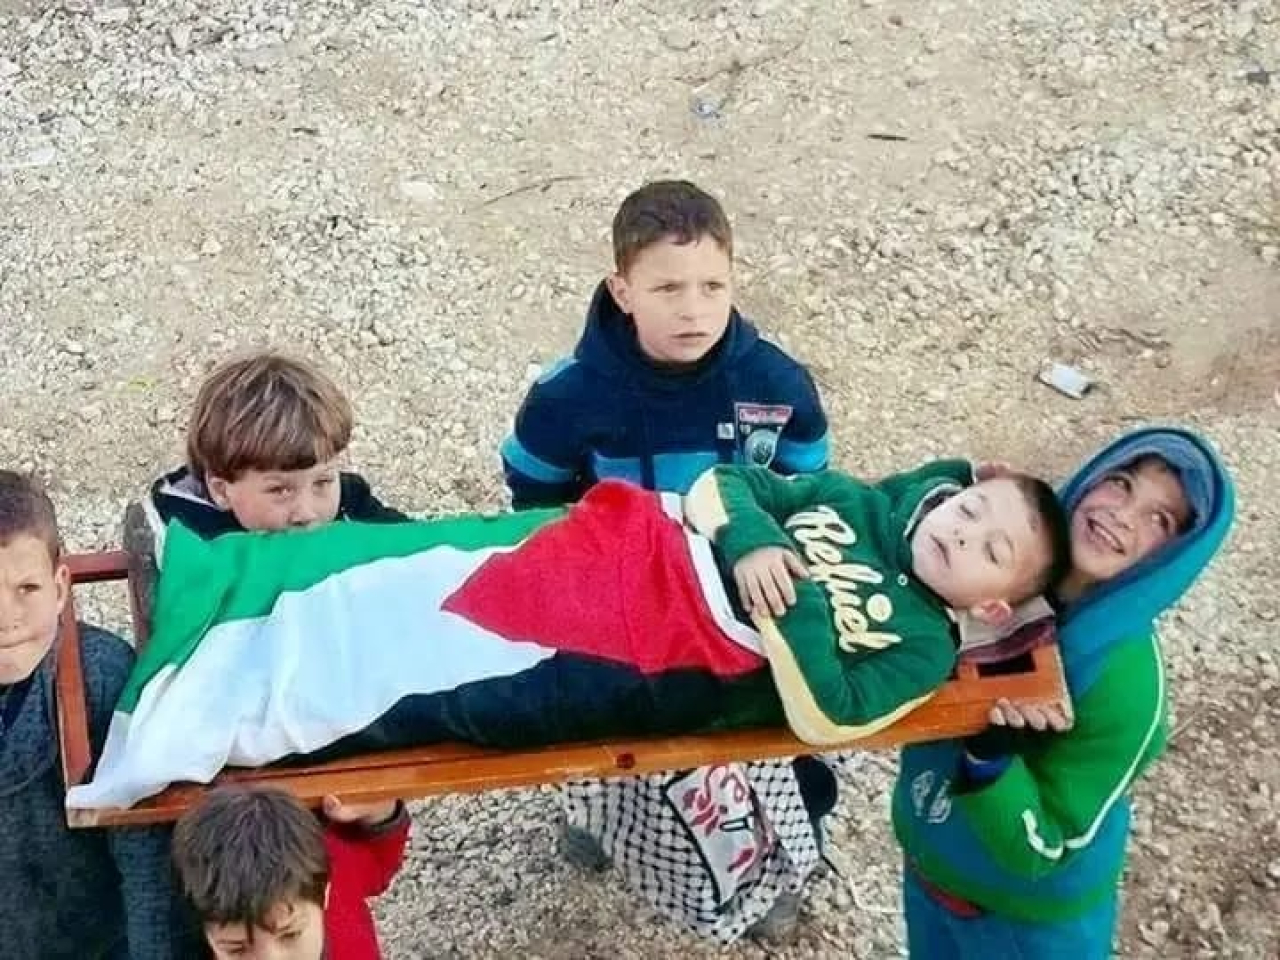 Seruan Dunia Mengungkap, Kejahatan Israel Terhadap Anak-Anak Palestina Tak Berdosa